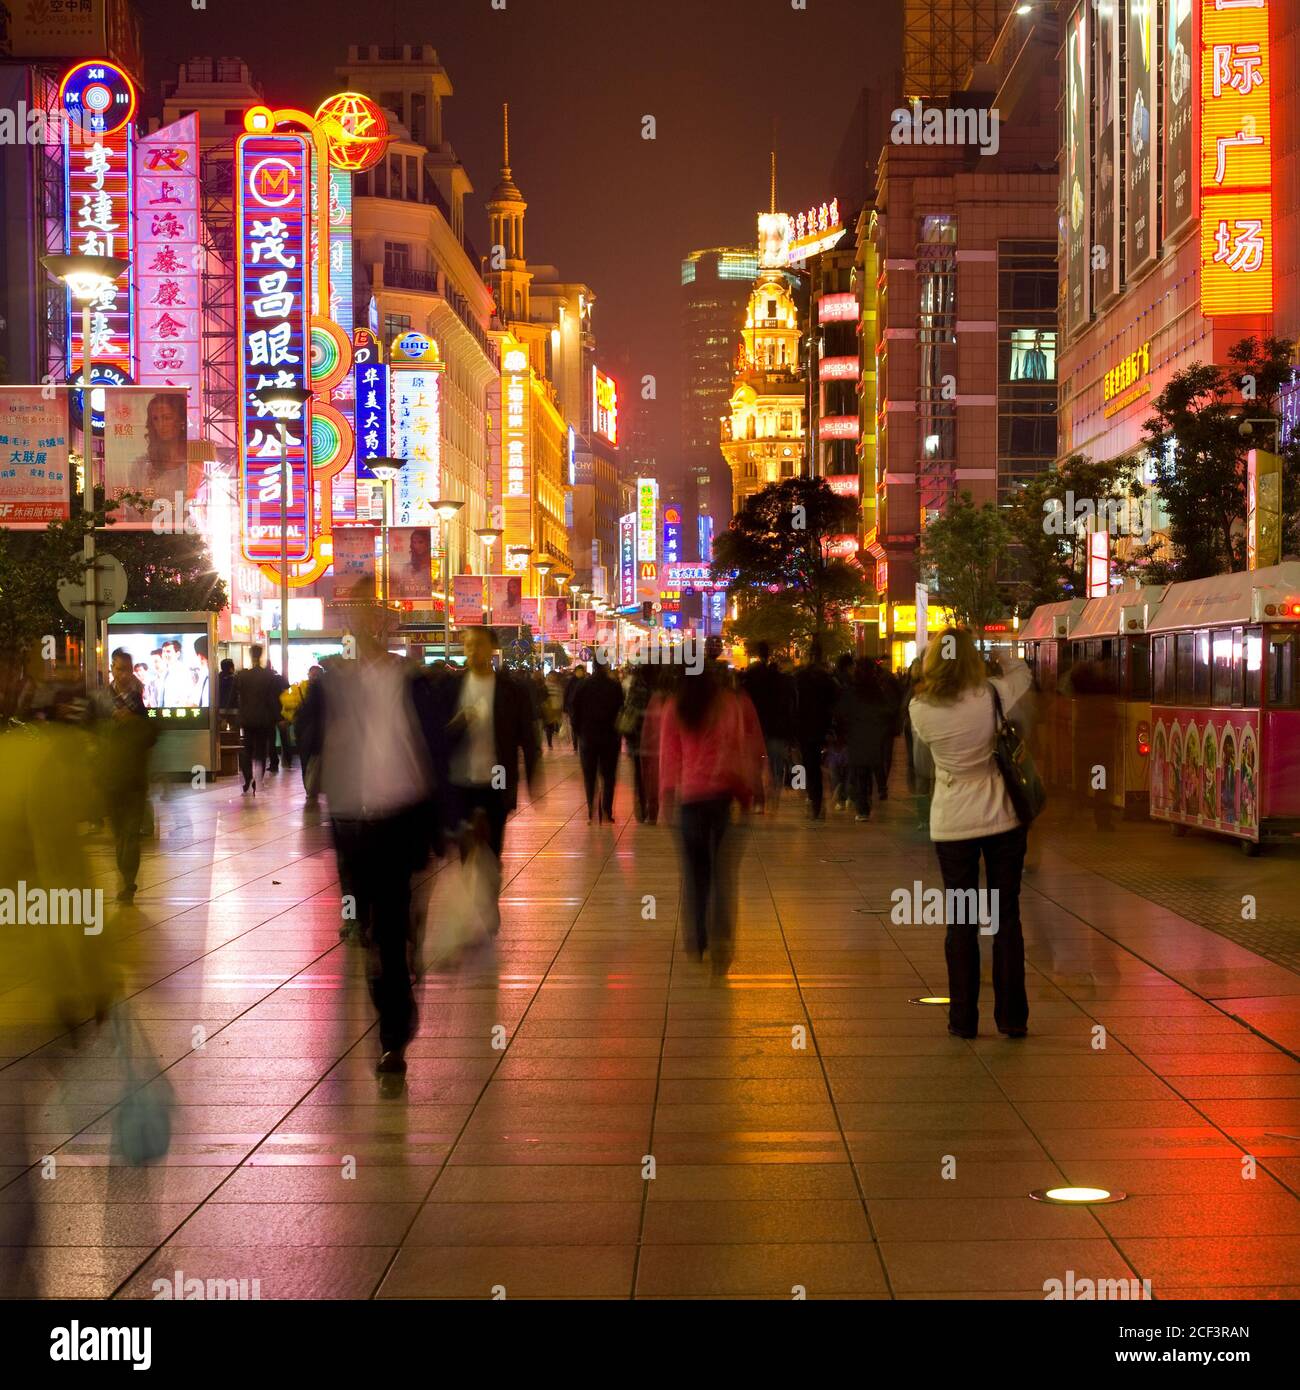 Shanghai, China, Asien - Neon Zeichen an Nanjing Road, eine Bürgermeister Einkaufsstraße in Shanghai. Stockfoto